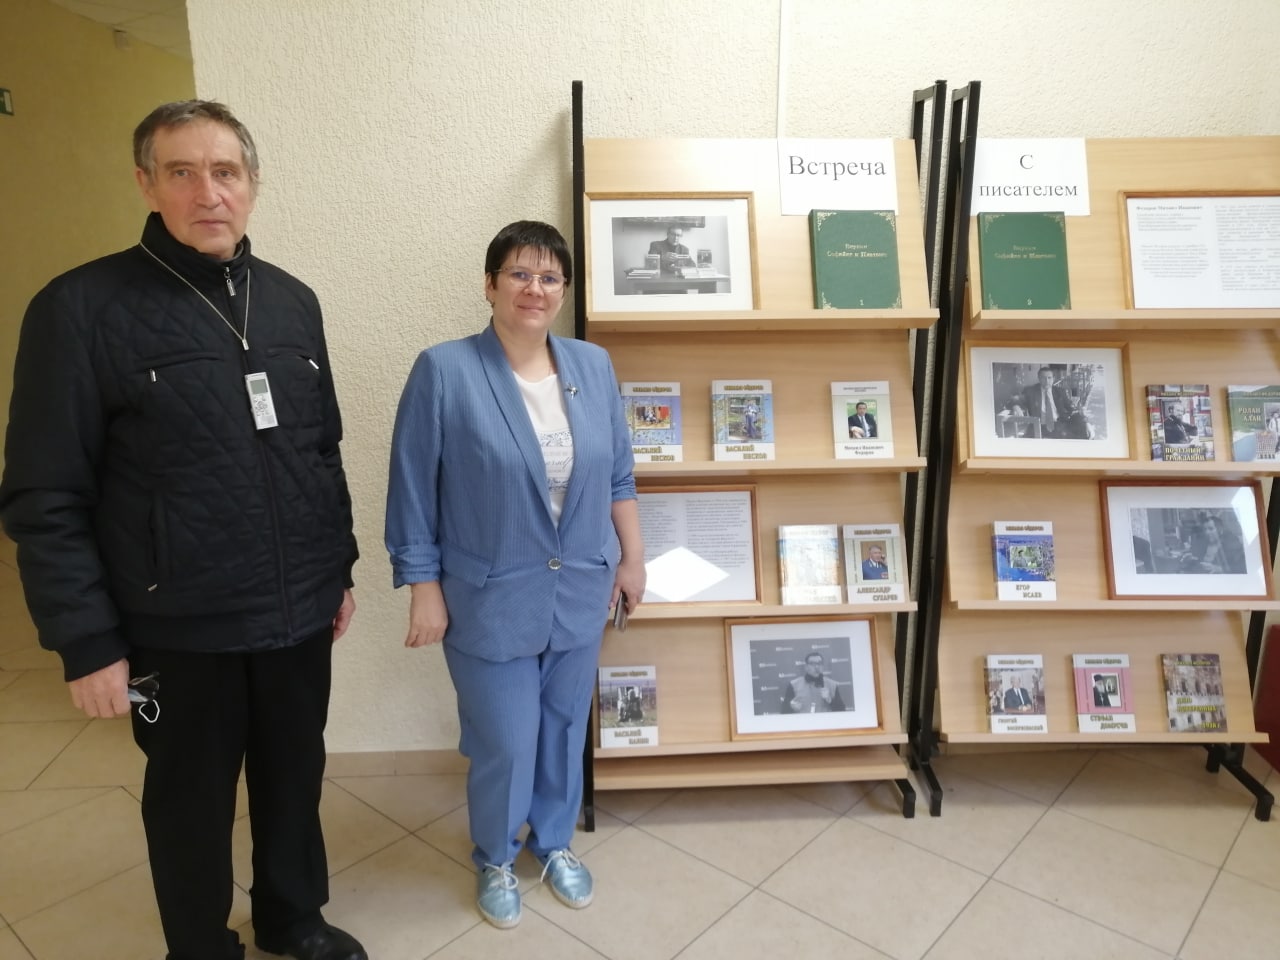 5 Федоров с заместителем директора школы Кустовой около выставки его книг